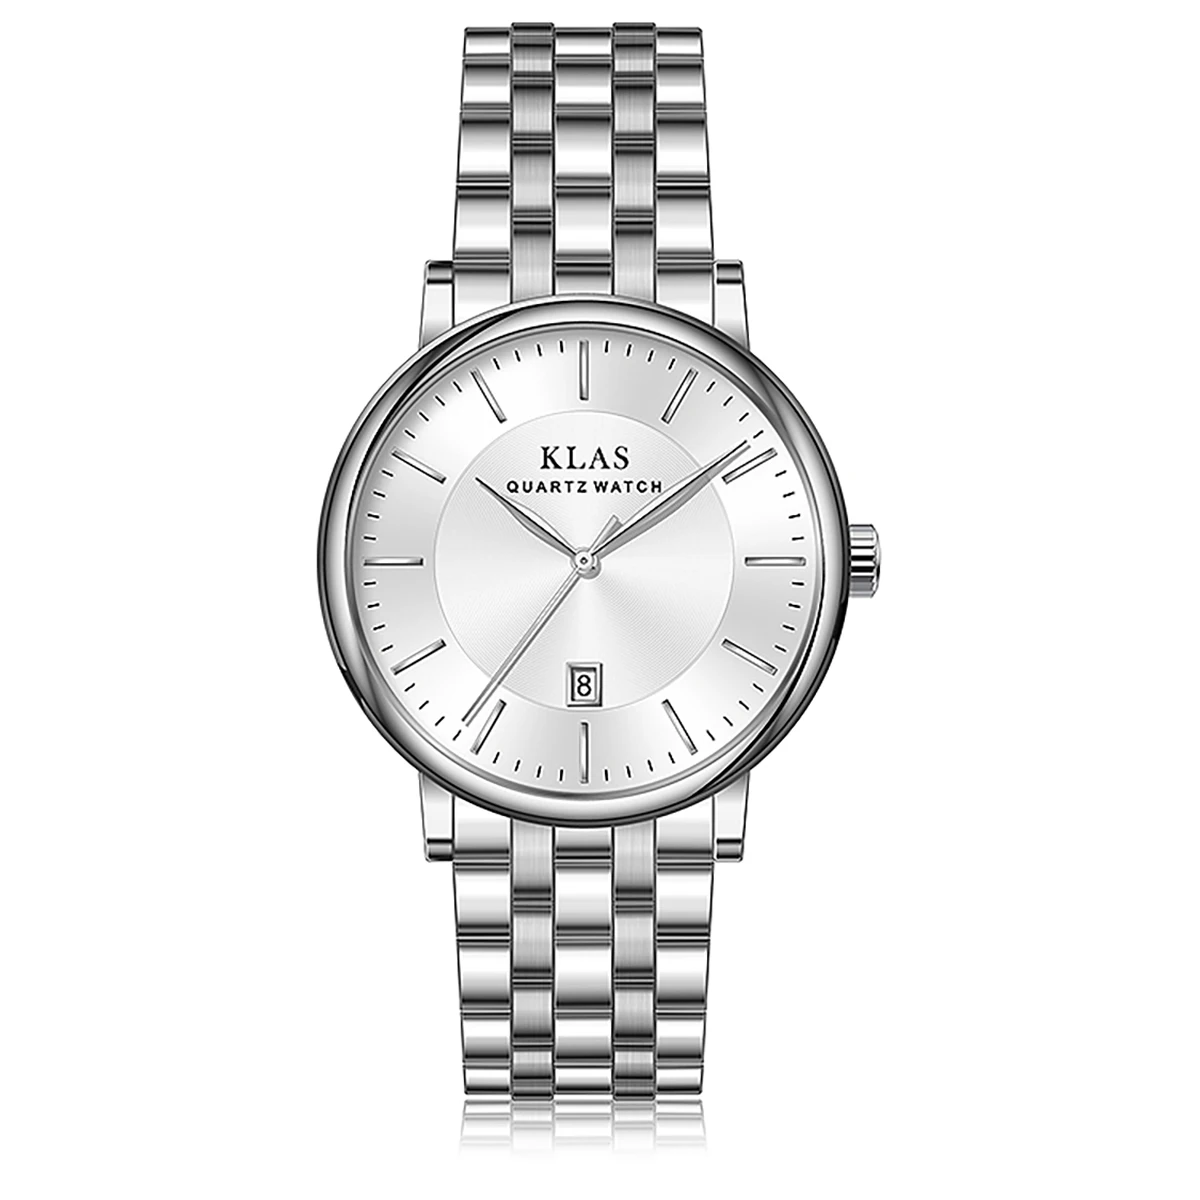 KLAS brand New Fashion Men's watch birthday gift silver luxury Quartz Watch